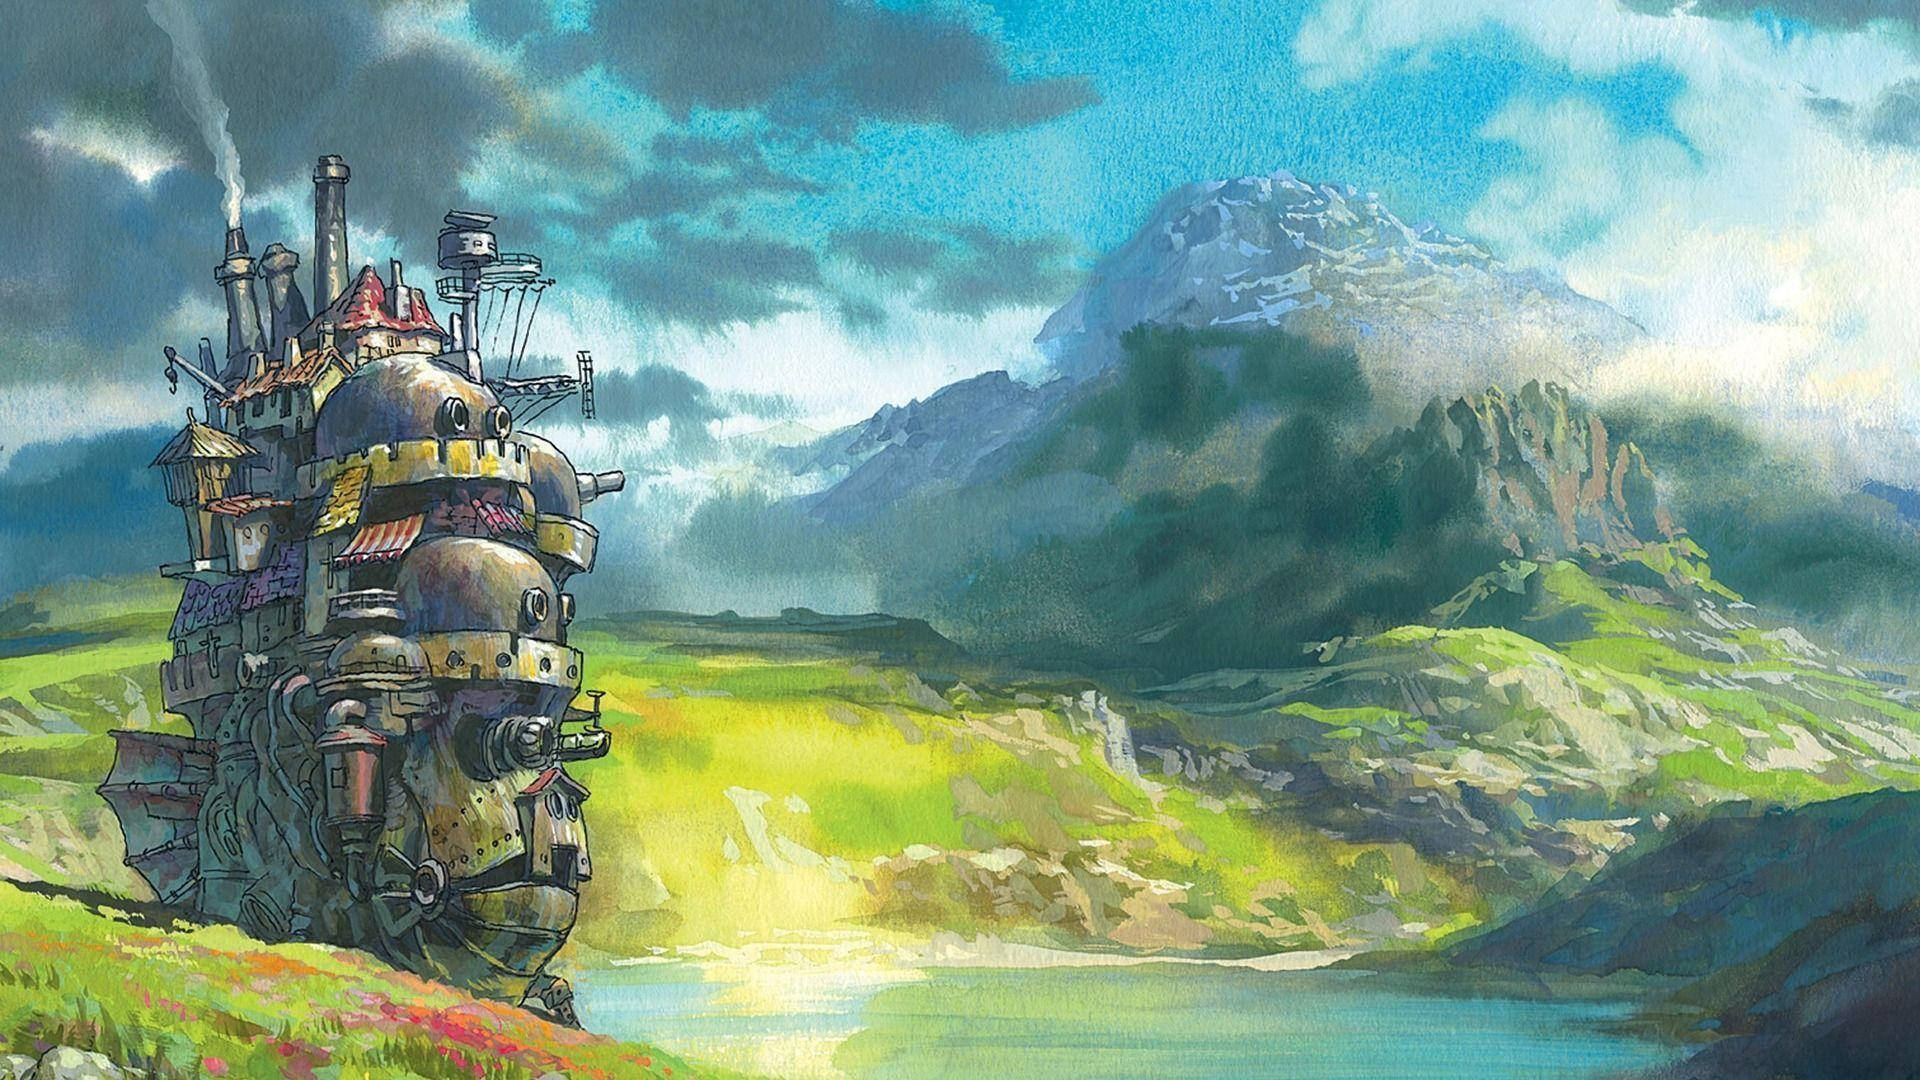 Ghibli Howl's Castle